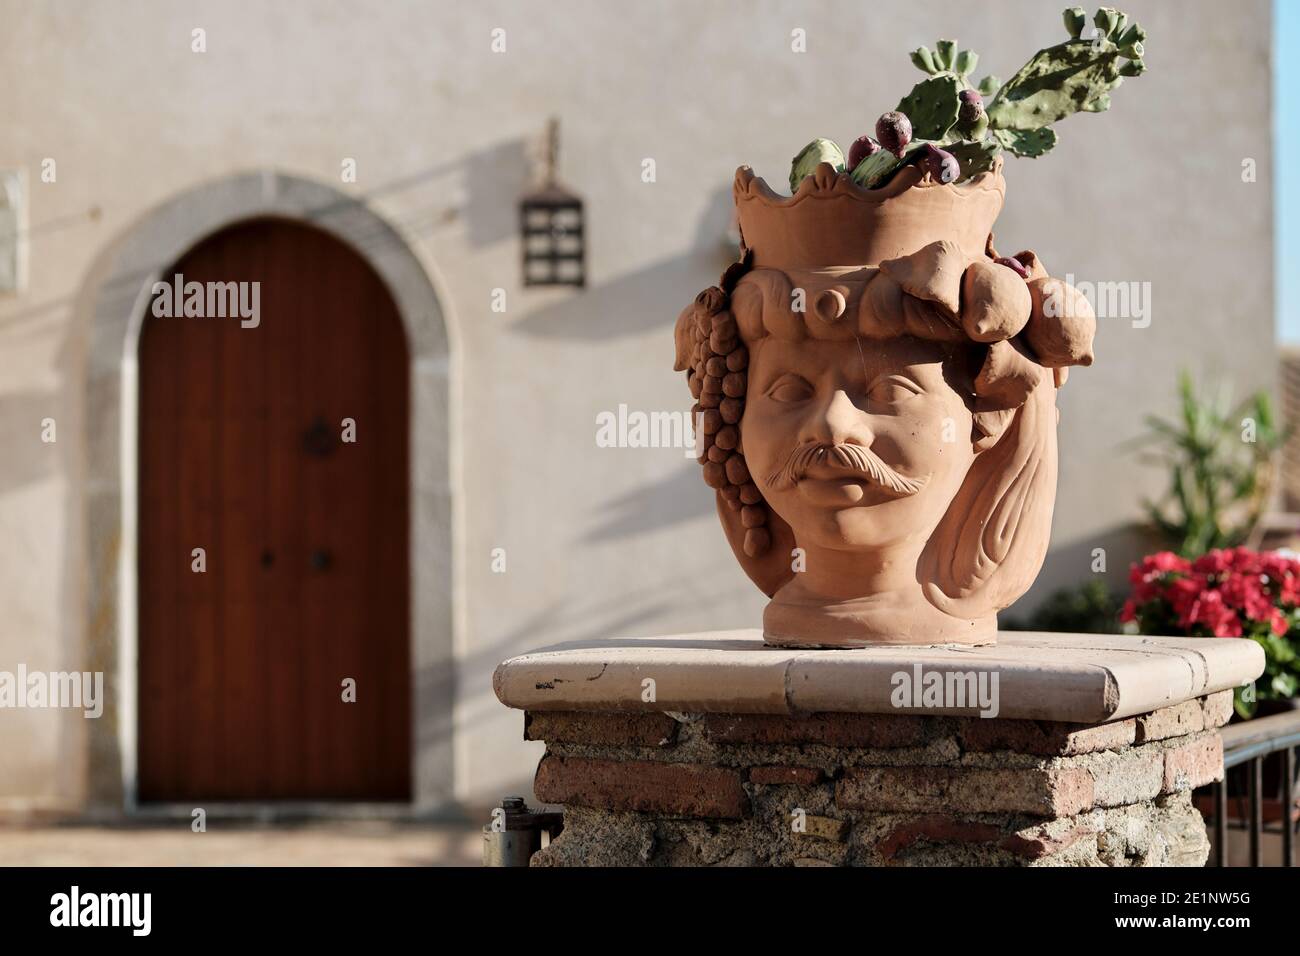 Hors foyer façade maison de la Sicile se concentre sur un pot traditionnel en terre cuite en forme de tête mauresque, dans le pot cultiver les fruits d'une poire piqueuse Banque D'Images